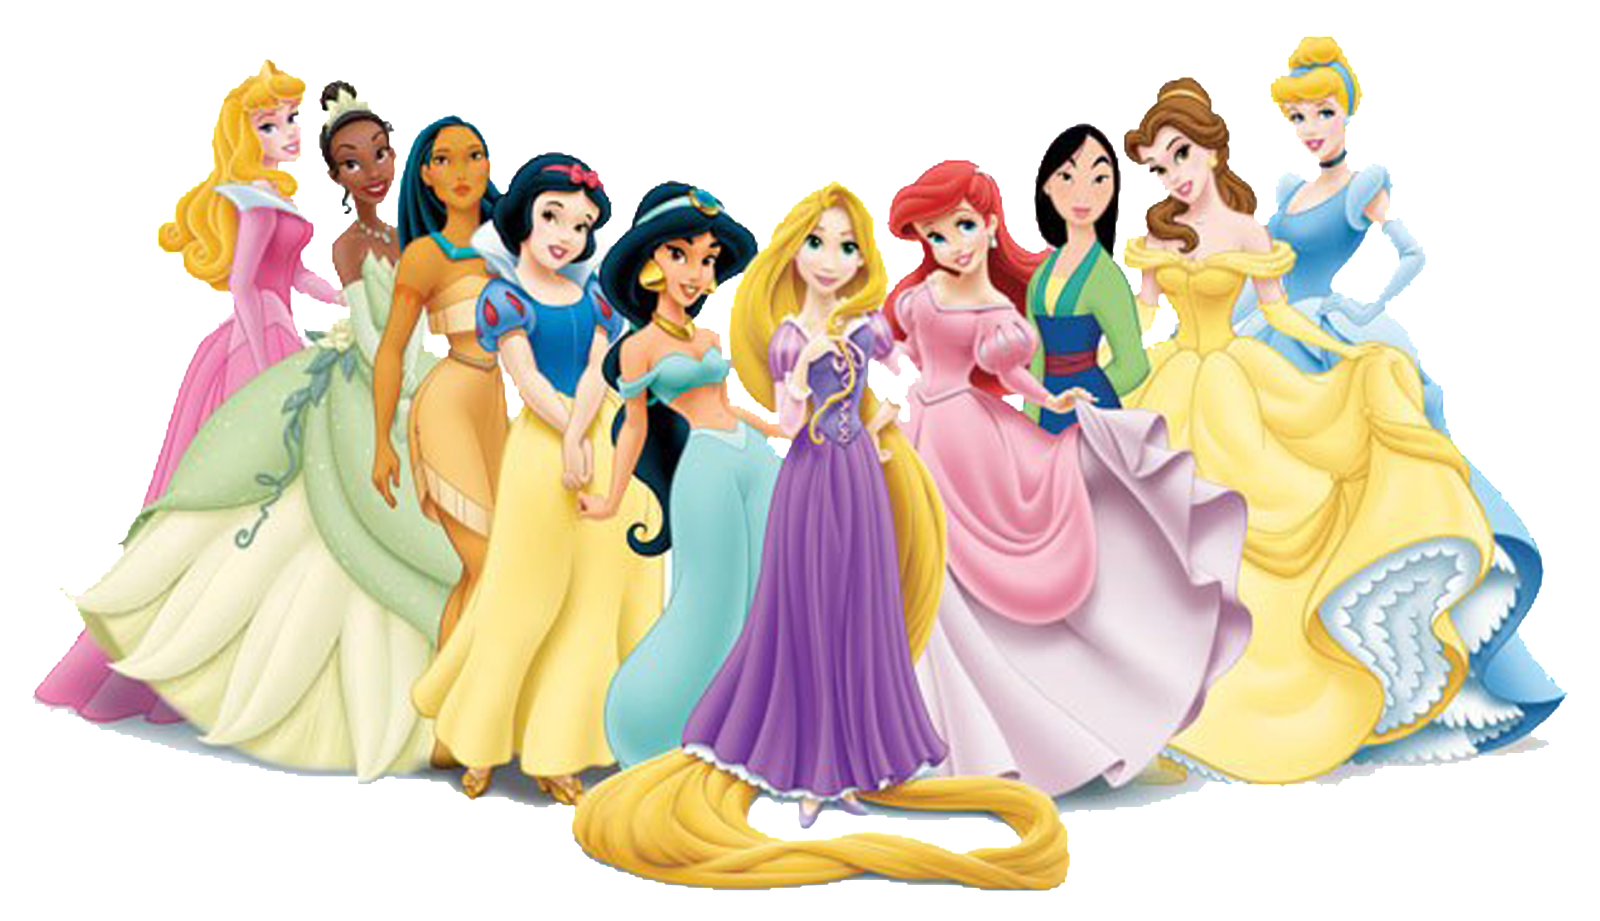 HQ Disney Princesses Wallpapers | File 1410.15Kb